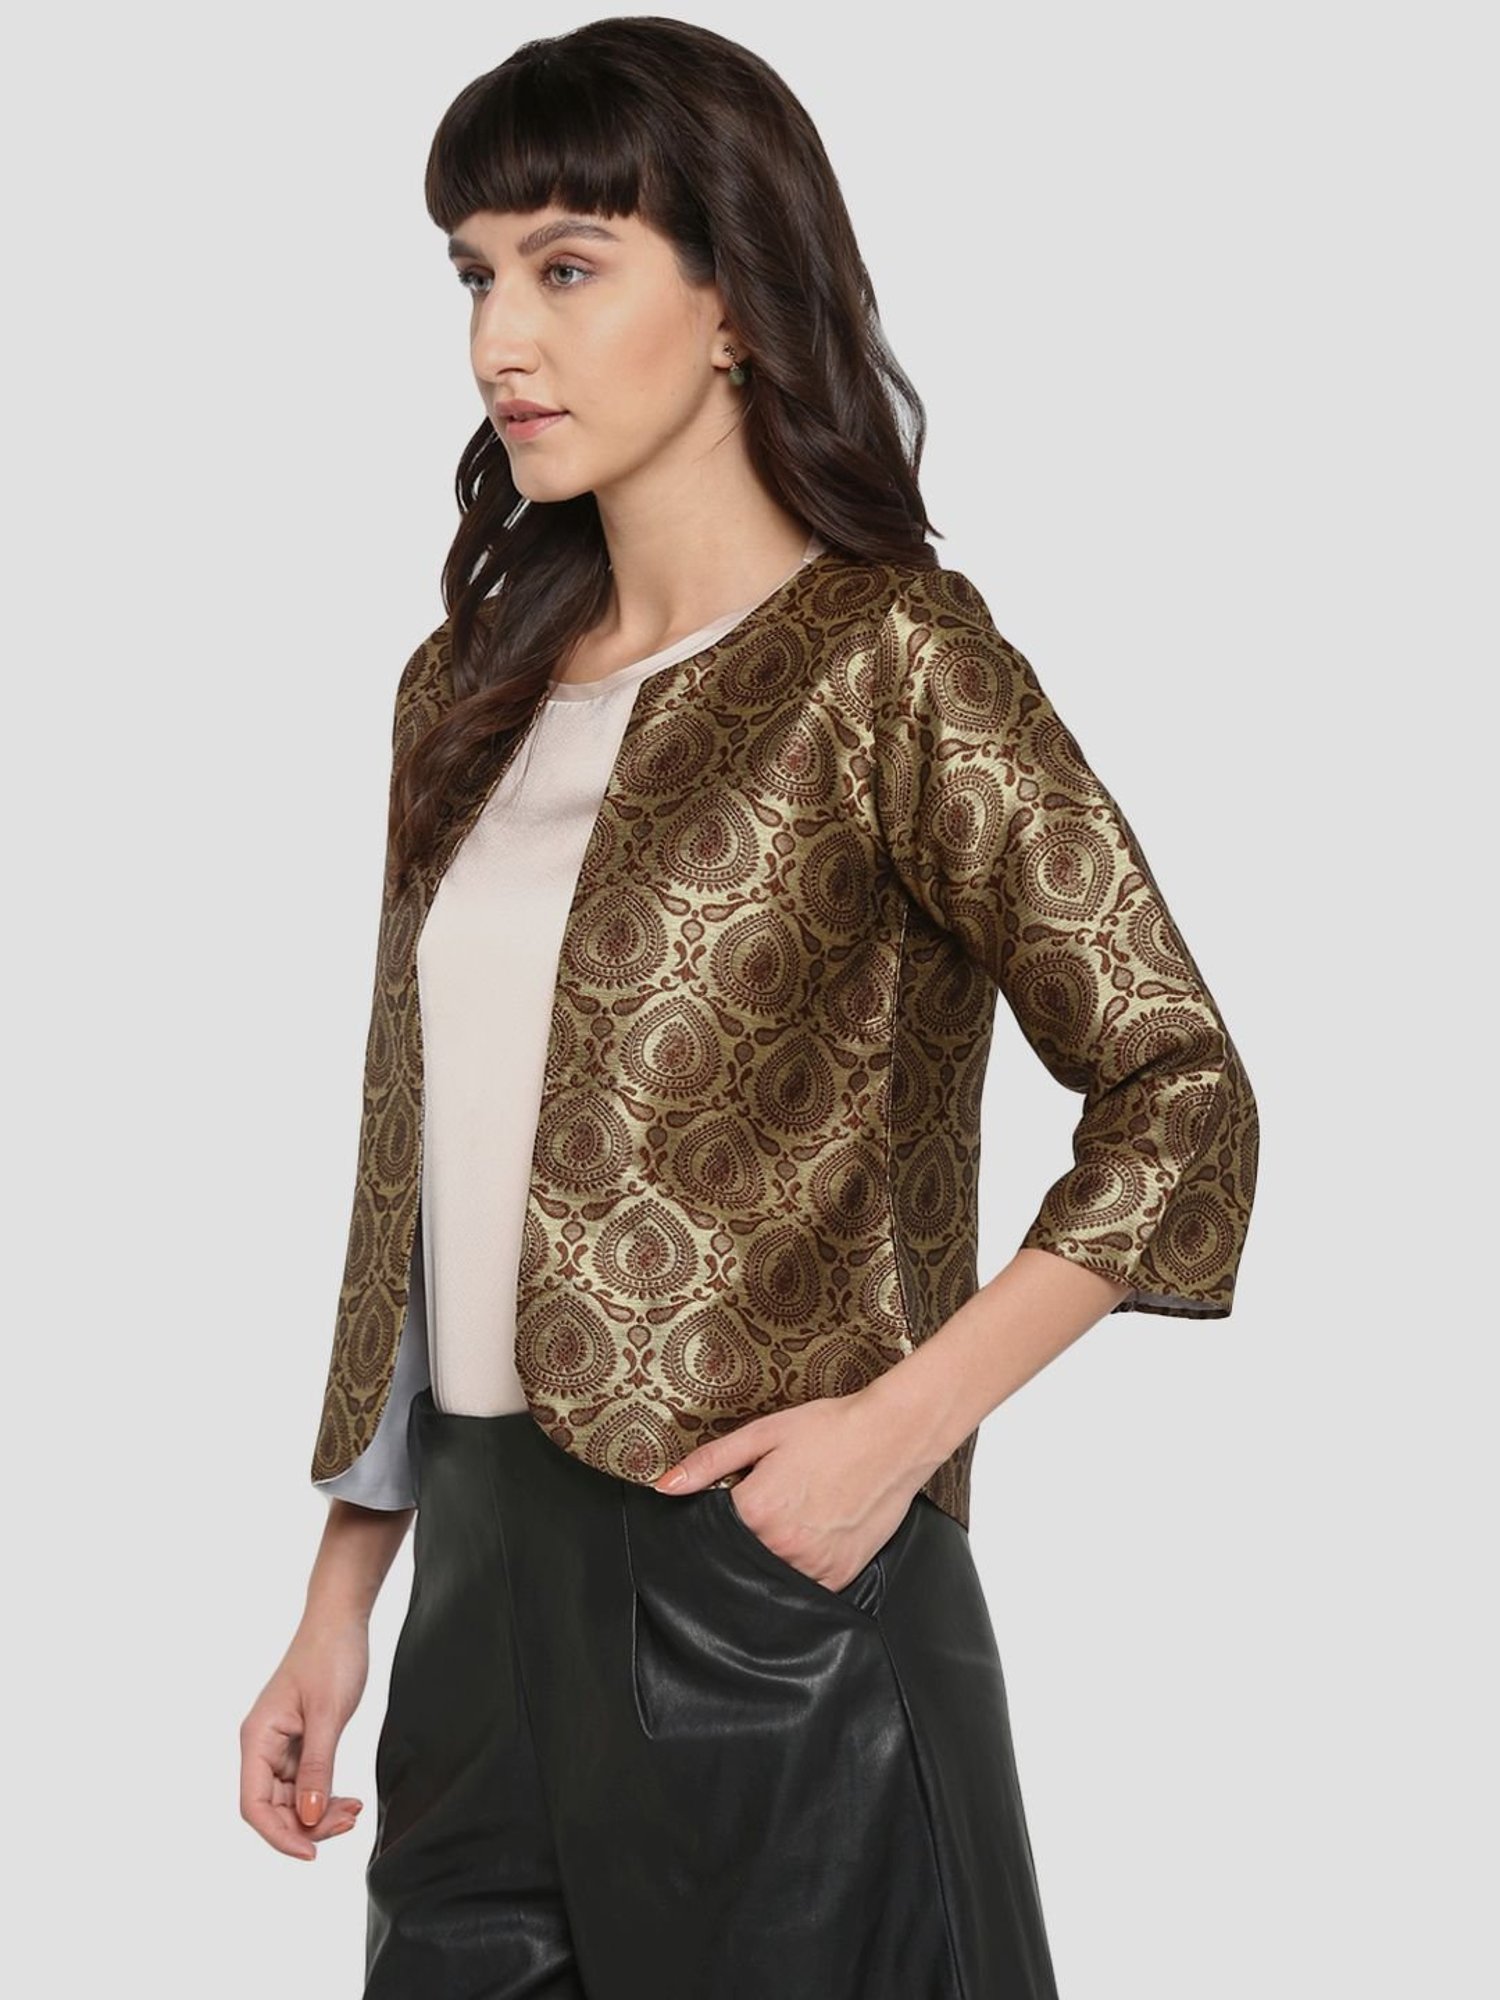 Golden jacket with teal lehenga – AALIYA DEEBA